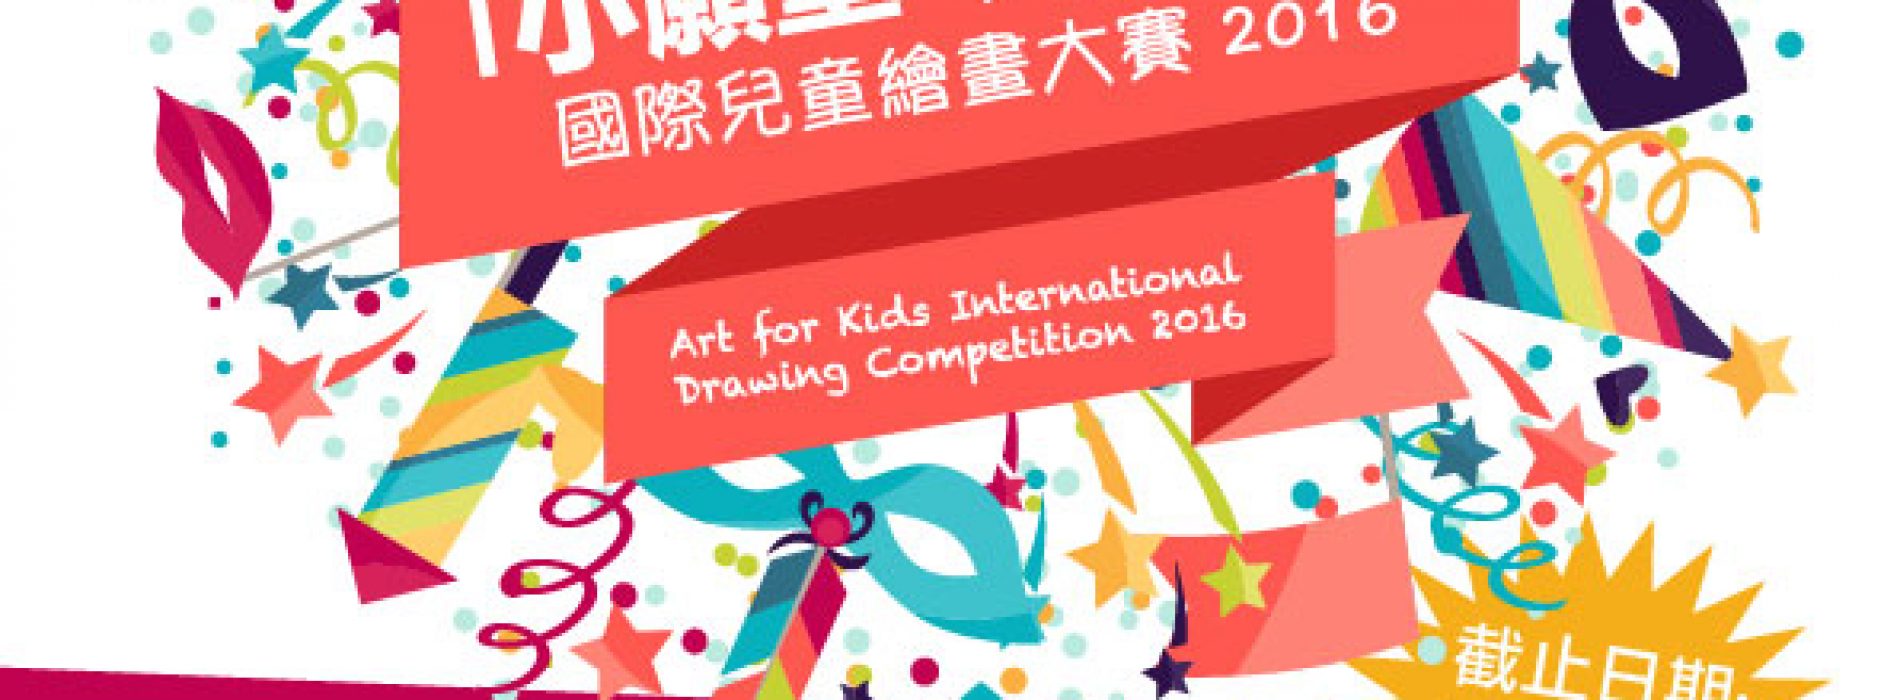 「小願望・大夢想」 國際兒童繪畫大賽 [截止報名：6月10日]